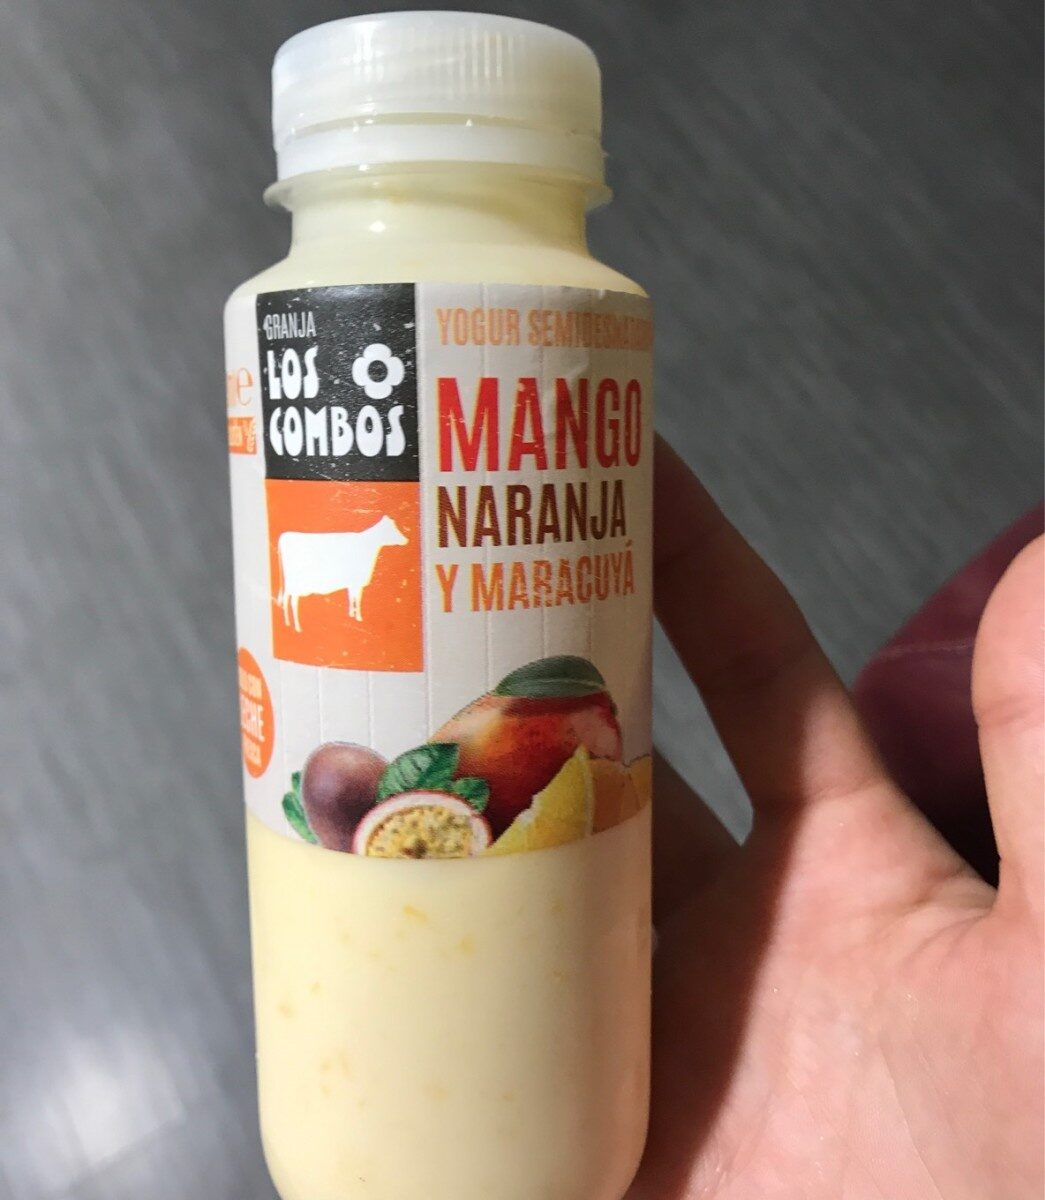 Yogur semidesnatado de mango naranja y maracuya - Producto - fr